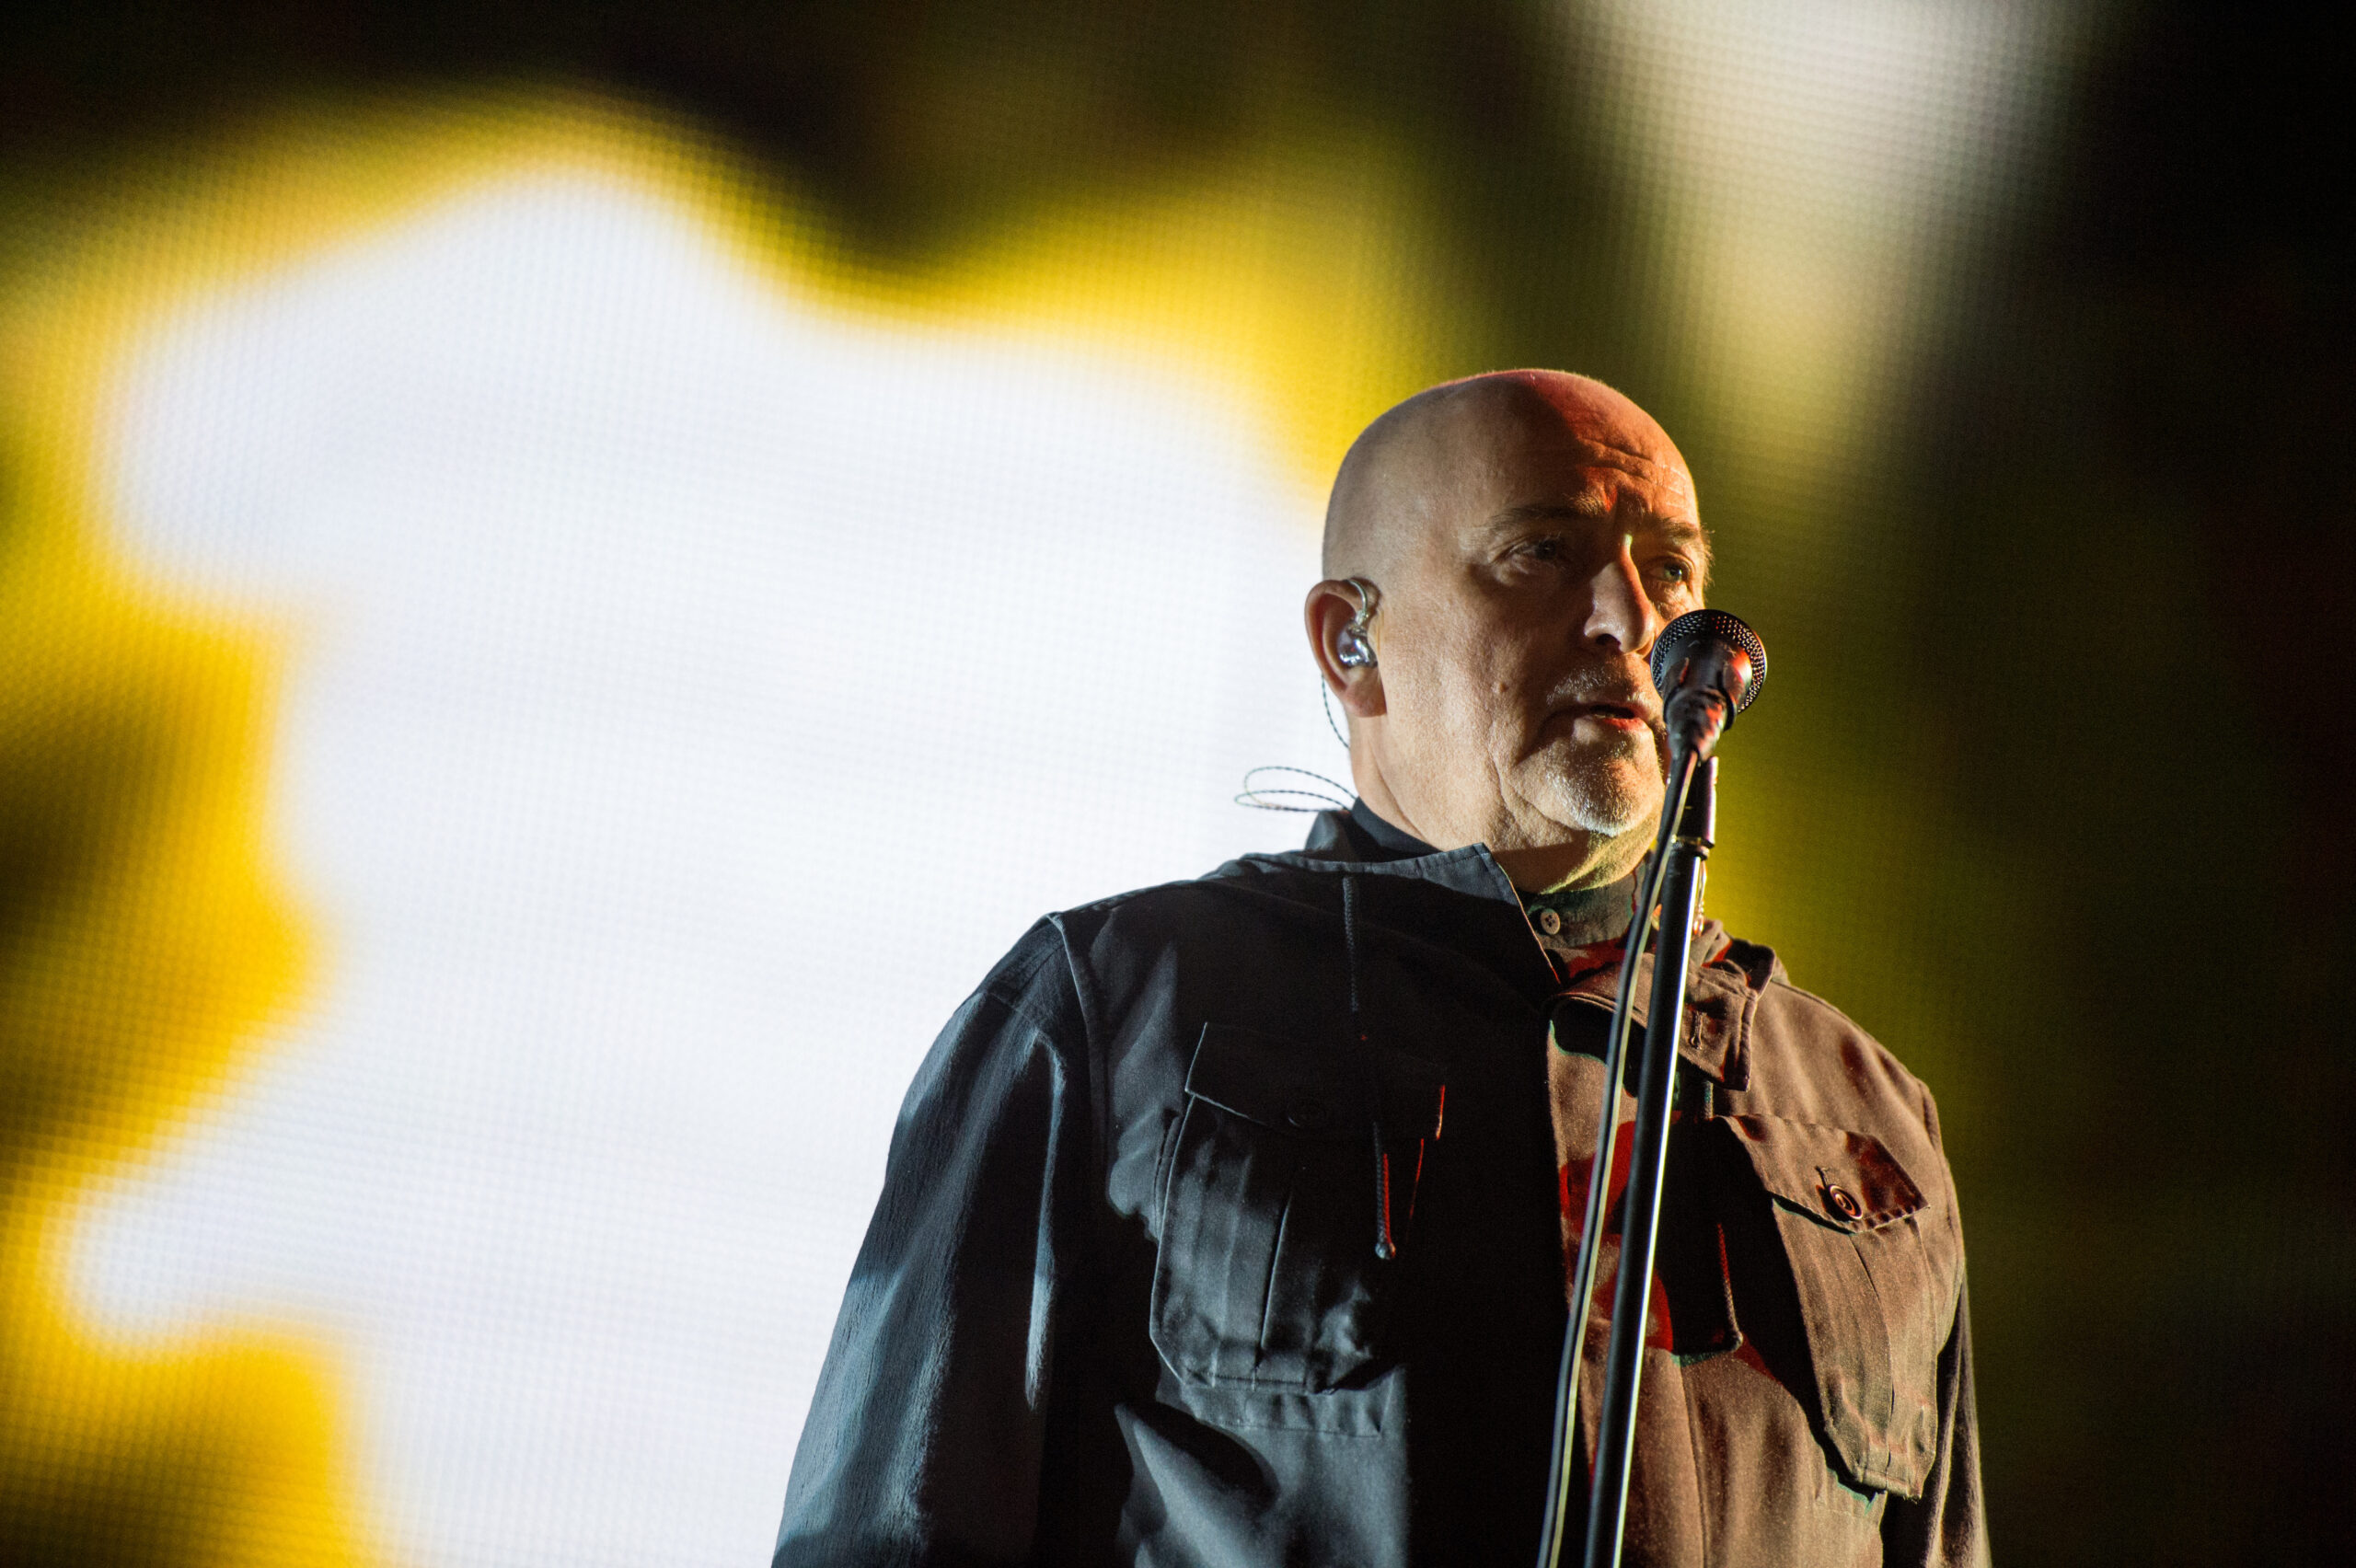 Sänger Peter Gabriel singt am 09.11.2014 beim Bürgerfest vor dem Brandenburger Tor in Berlin. (Archivbild)